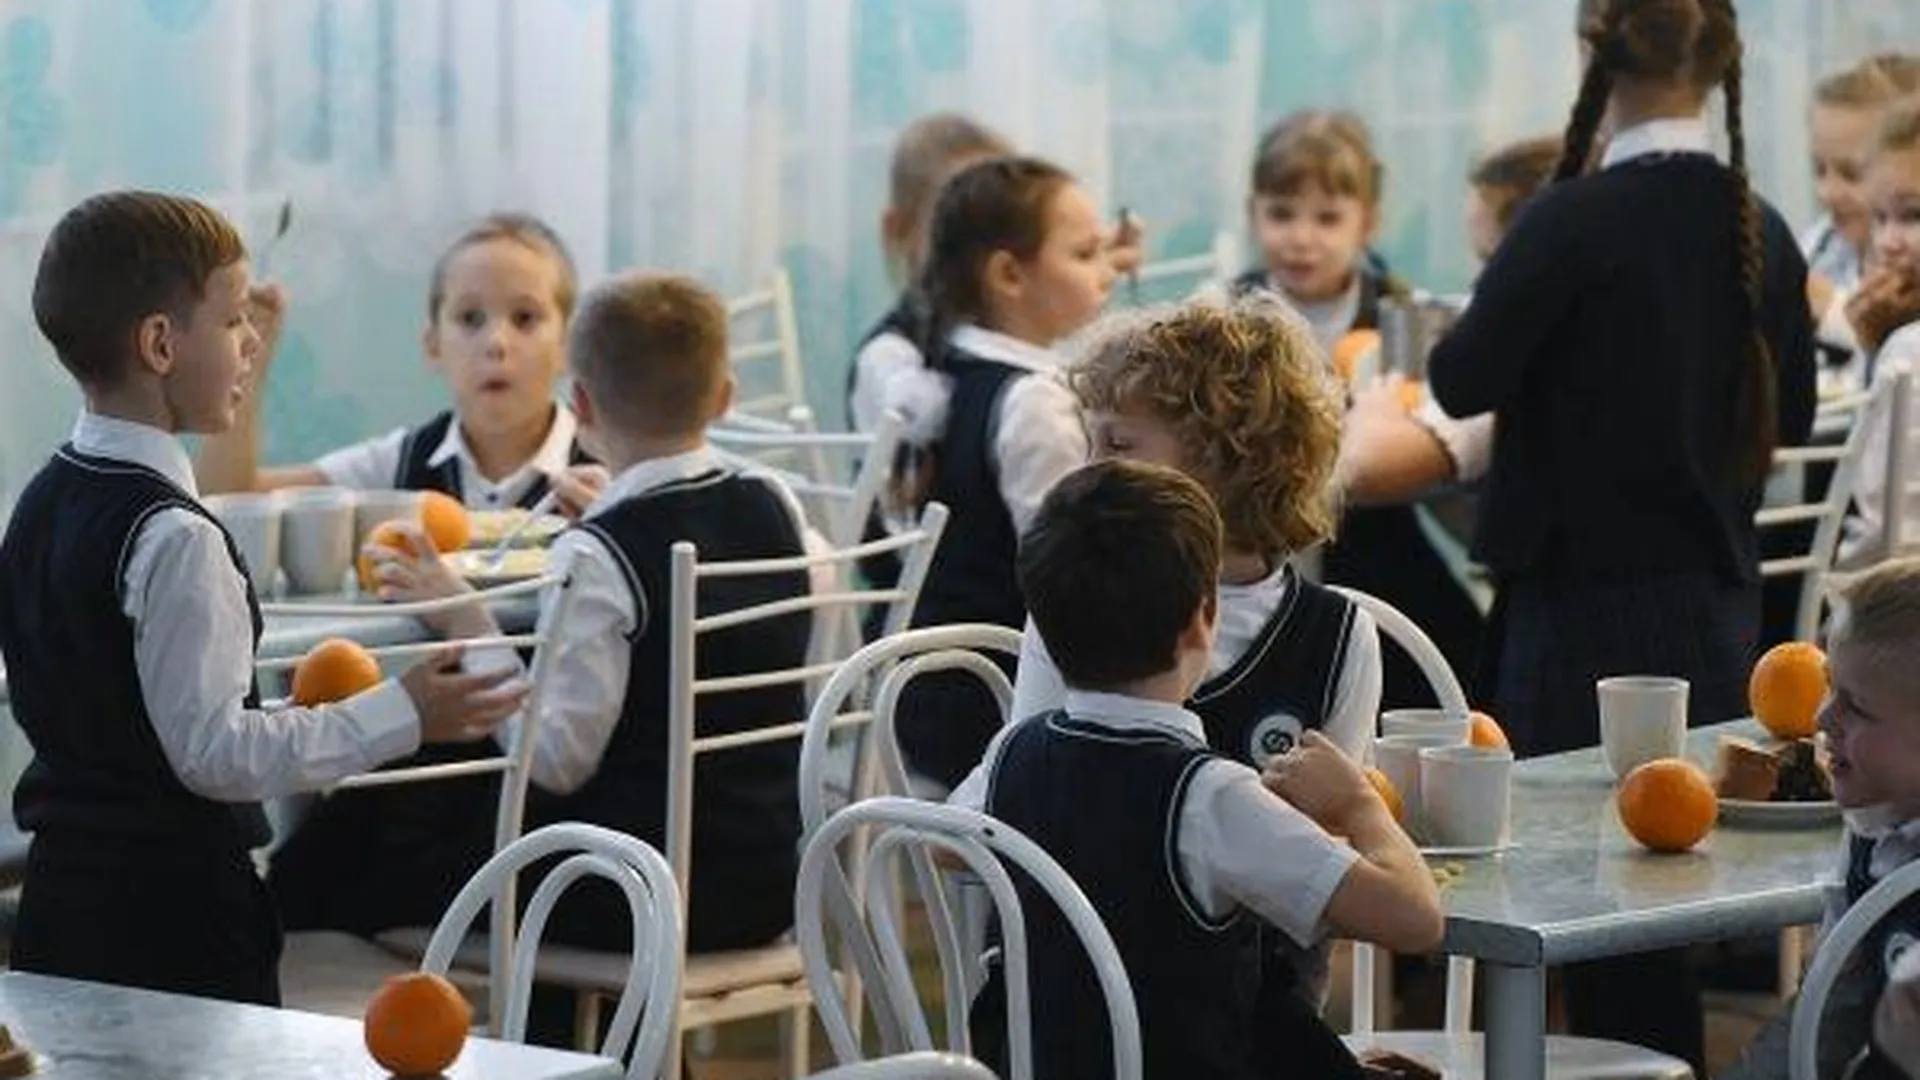 Опрос о качестве питания в школьных столовых проведут в Подмосковье